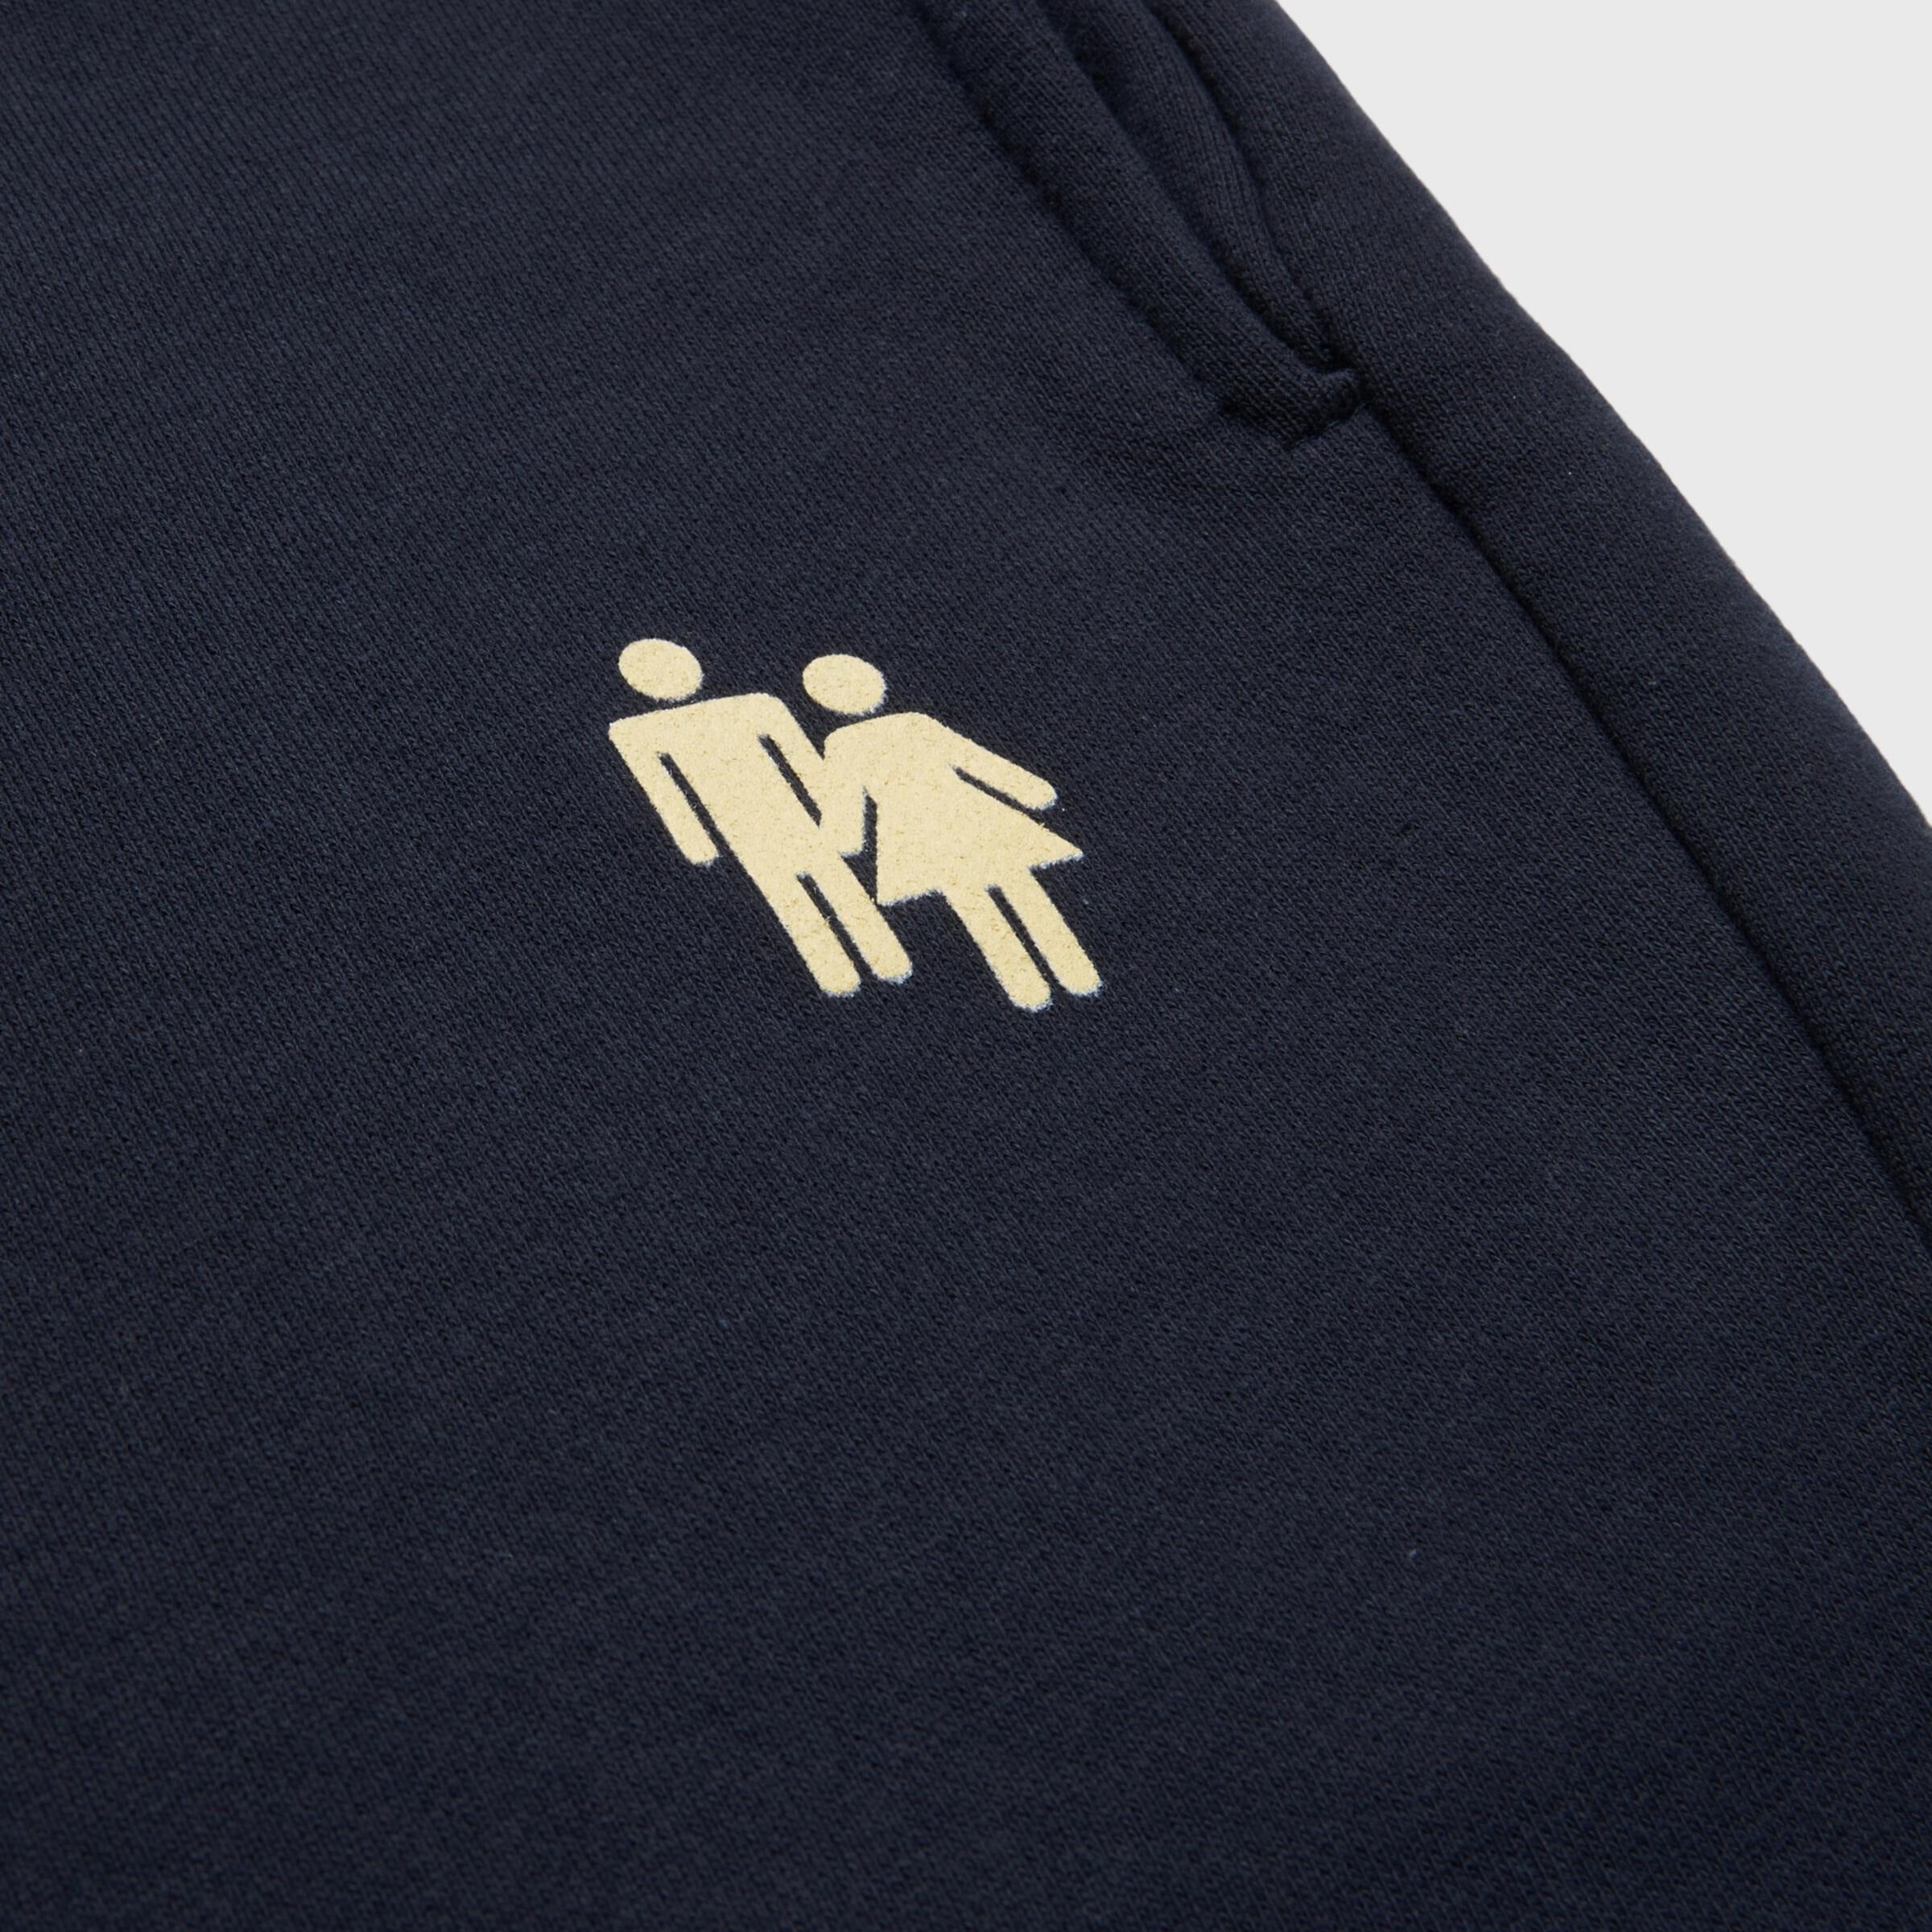 Homme + Femme Sweat Shorts - Logo Shorts